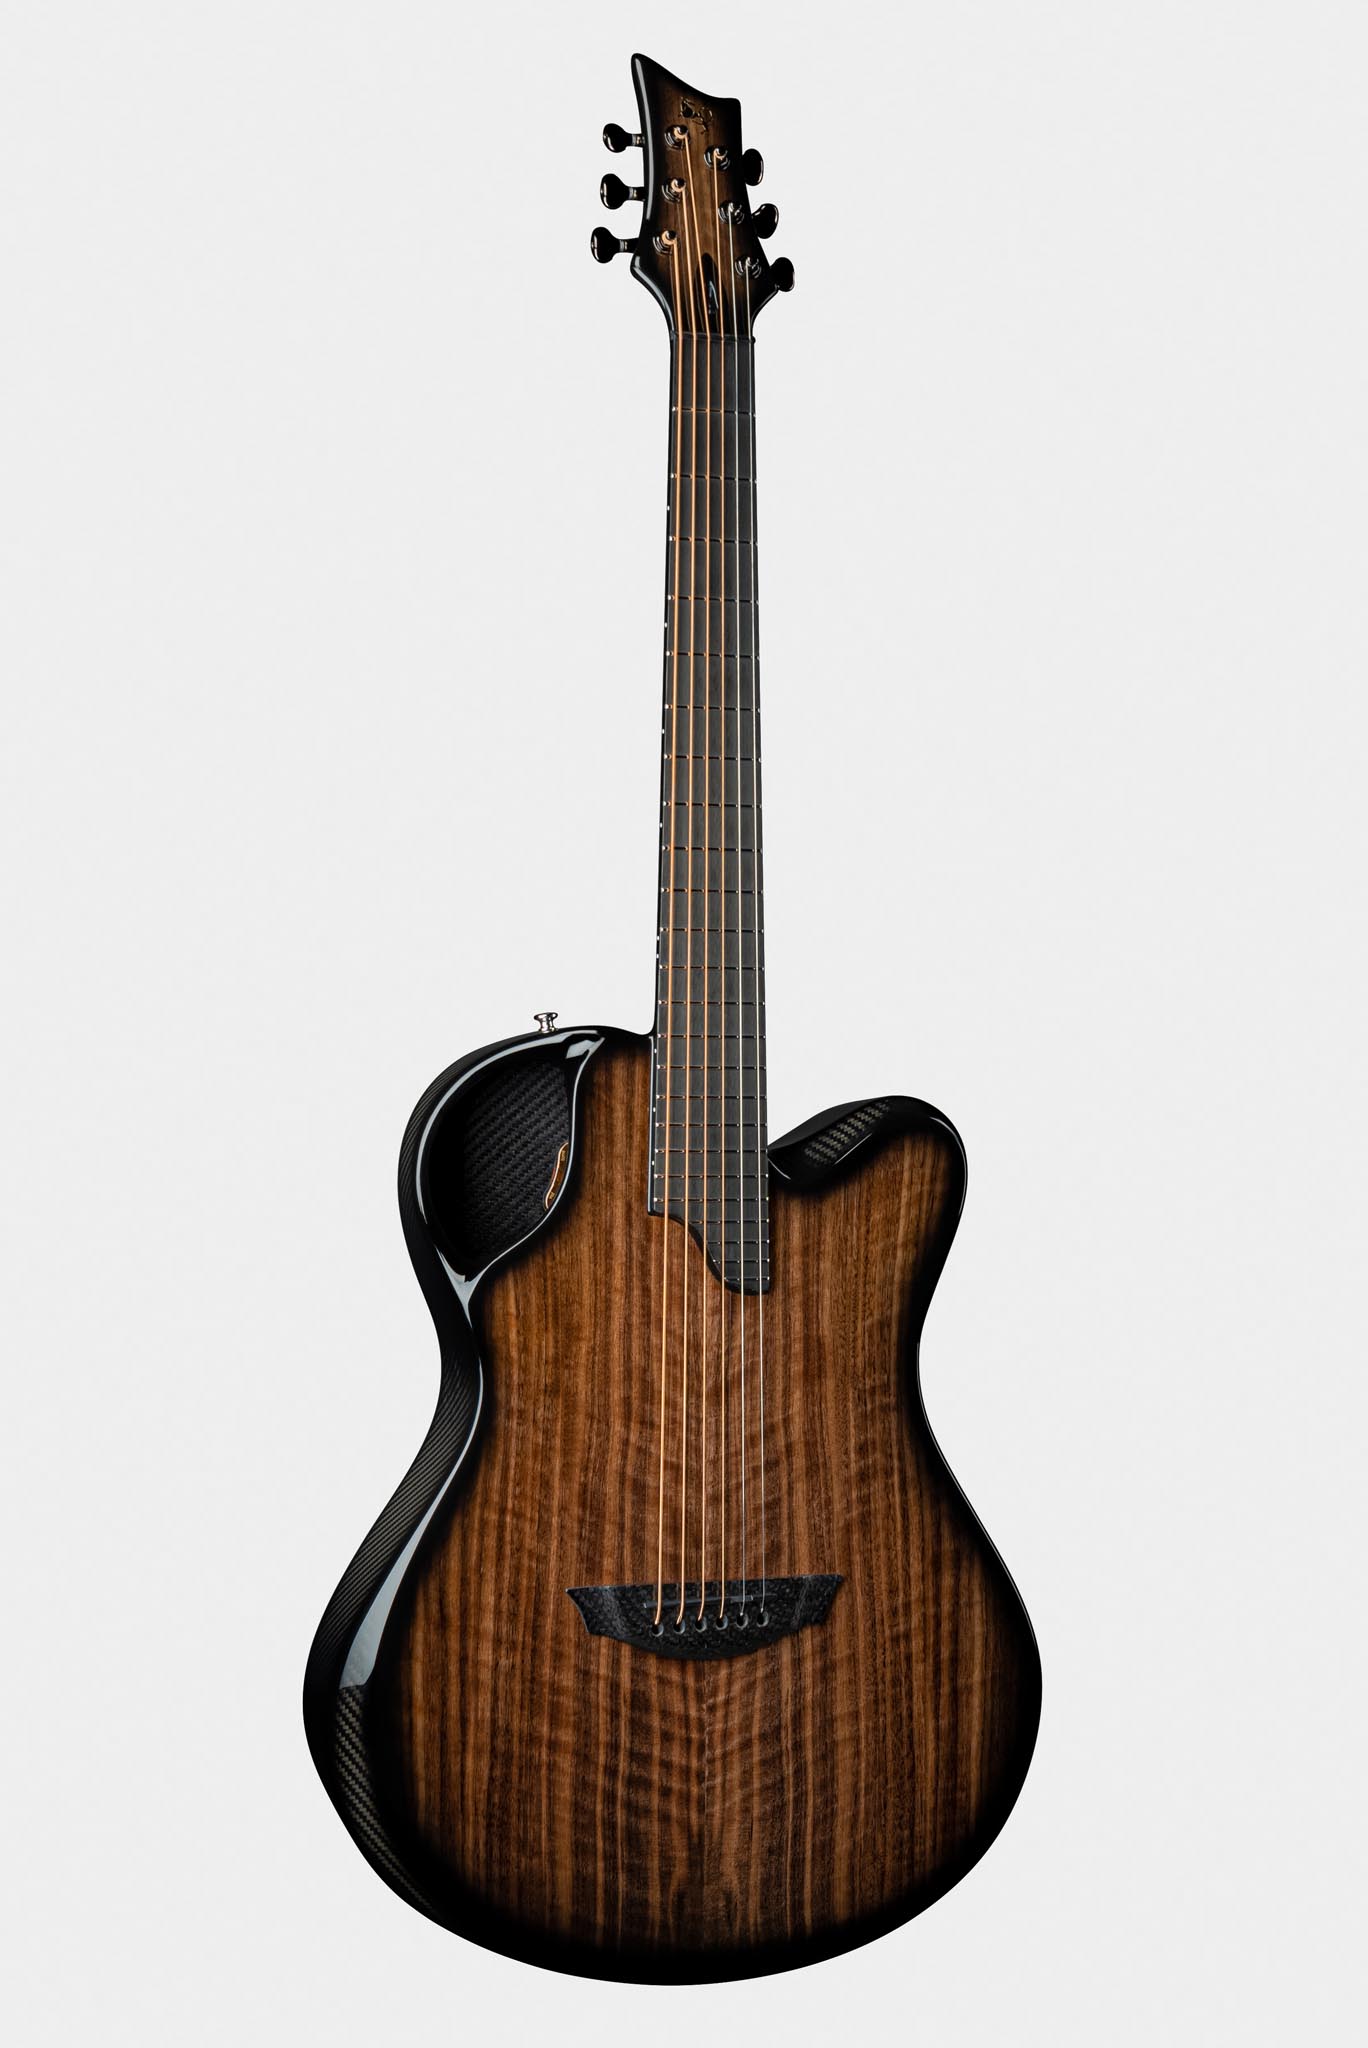 Emerald X20 Carbon Fiber Guitar in Walnut